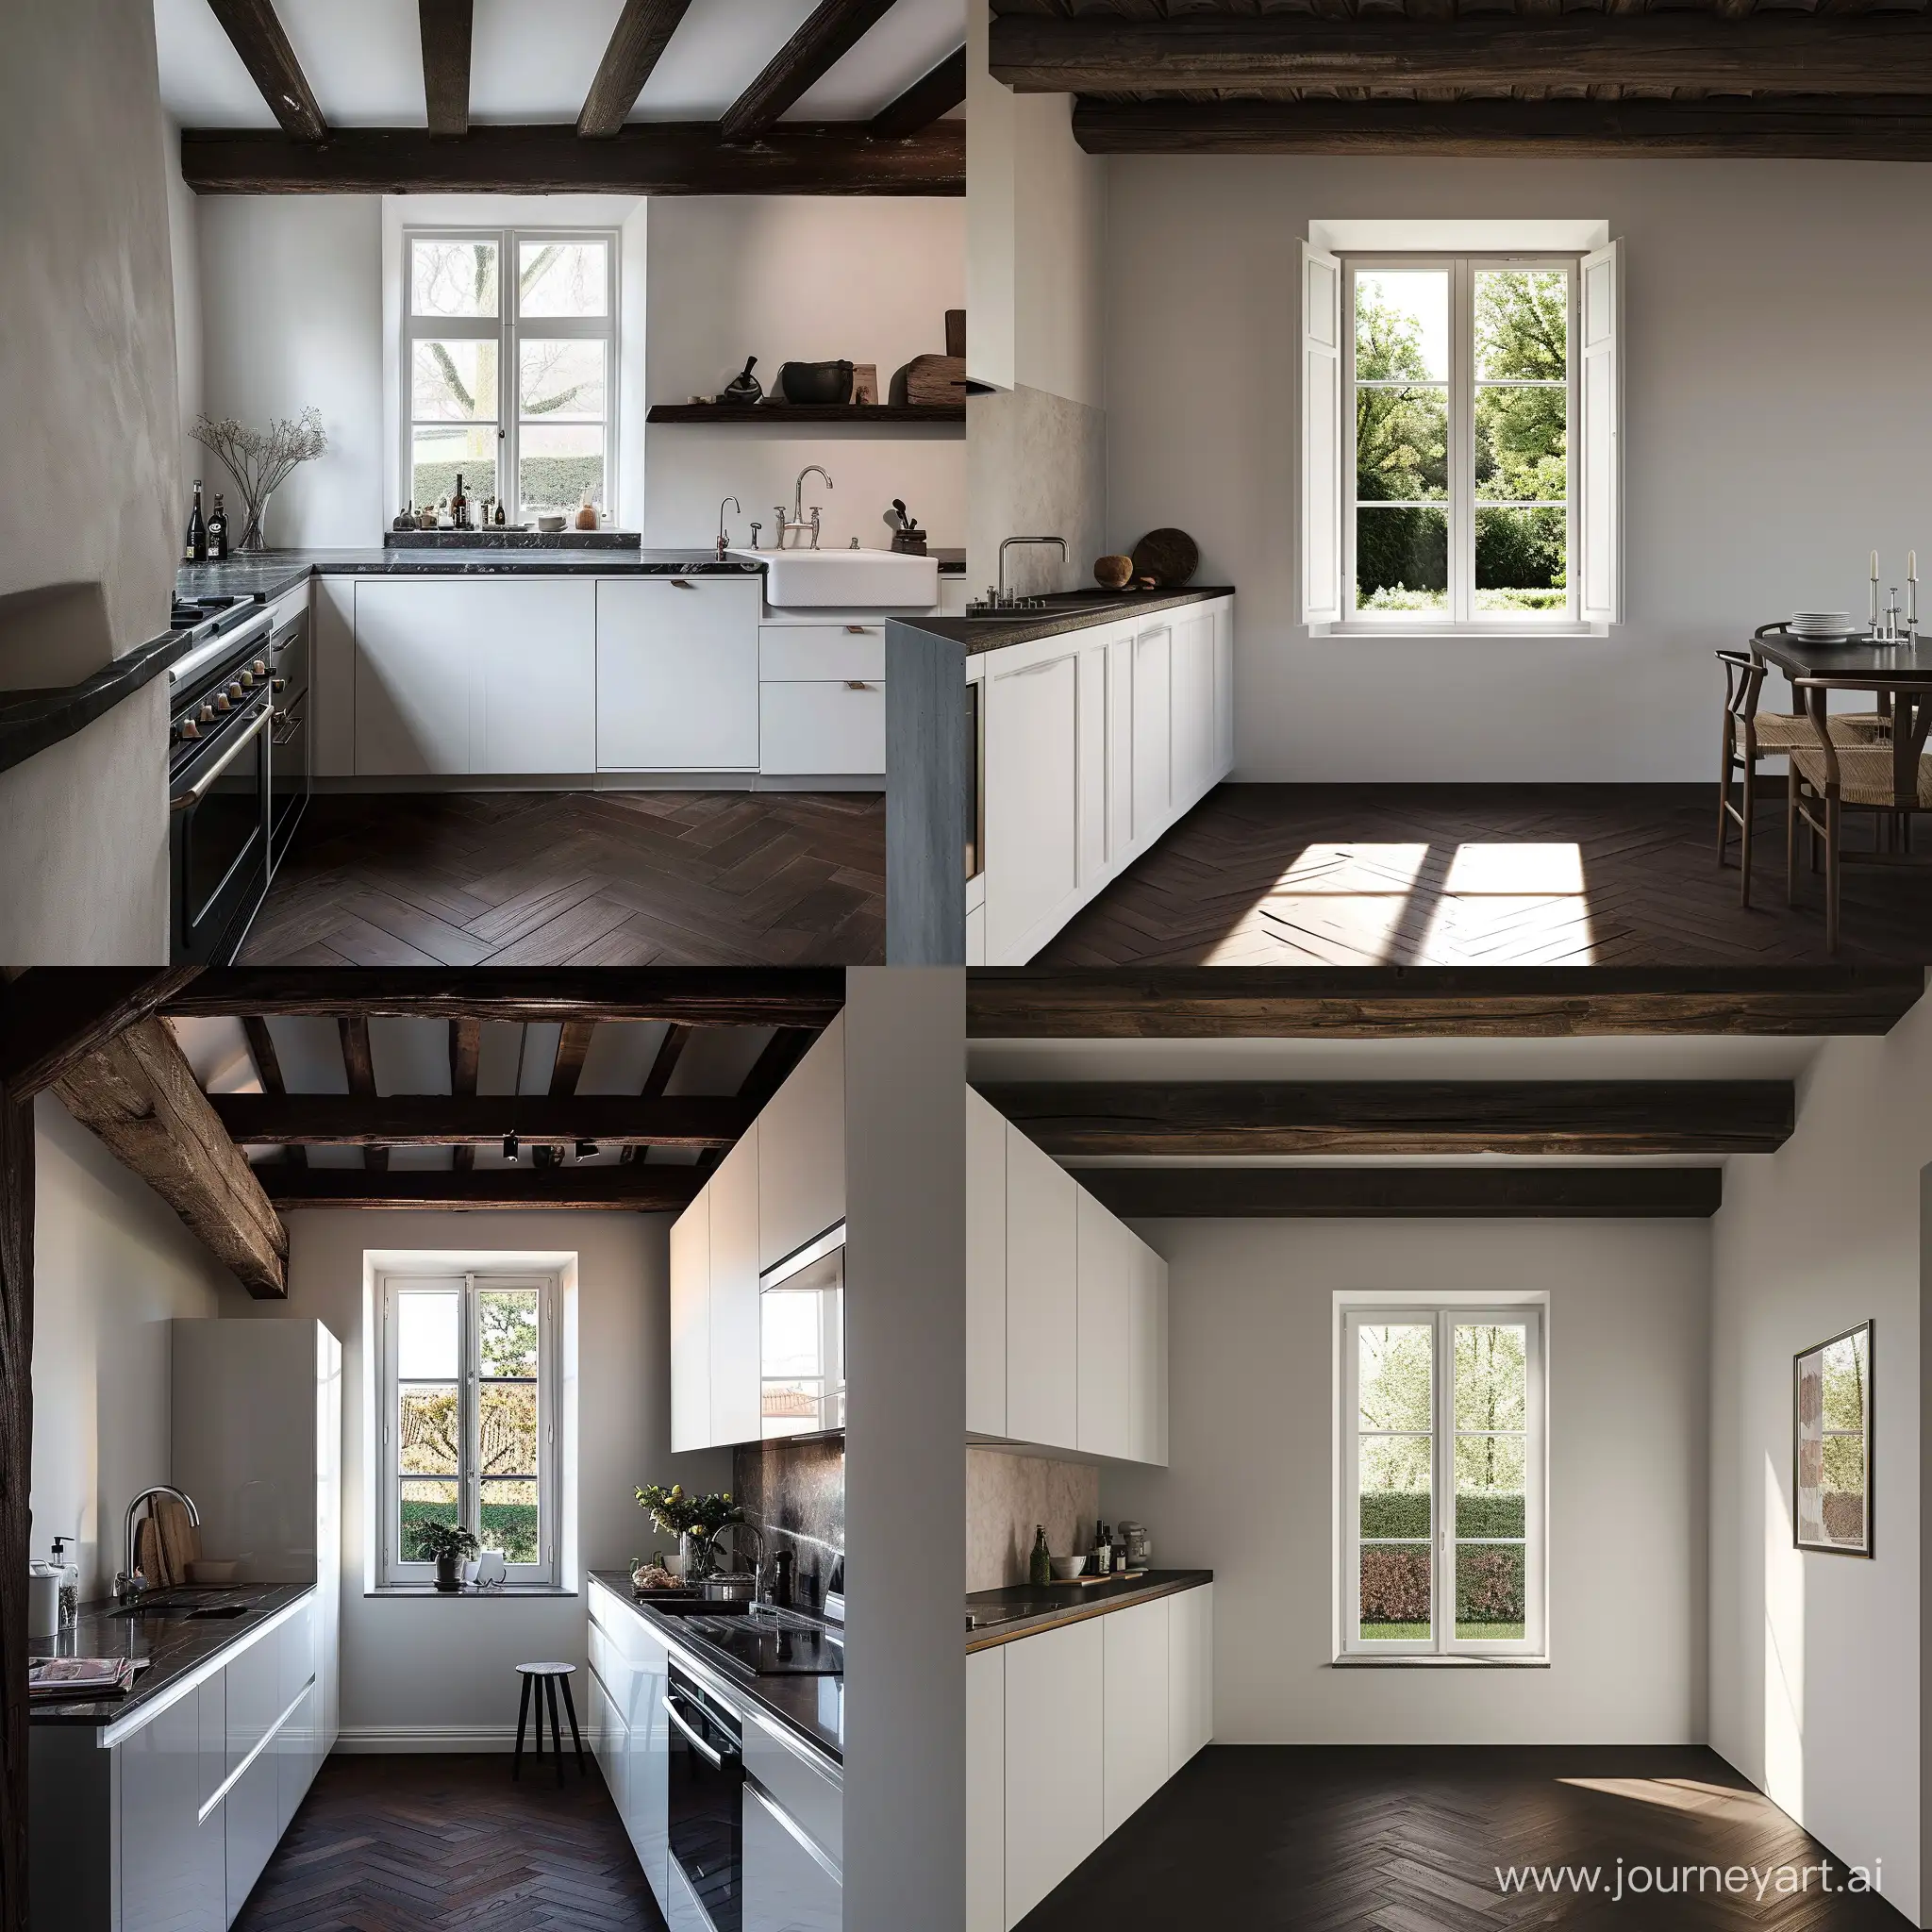 cucina con finestra sul giardino colore soft white. stile moderno.  pavimento parquet scuro  soffitto travi di legno.